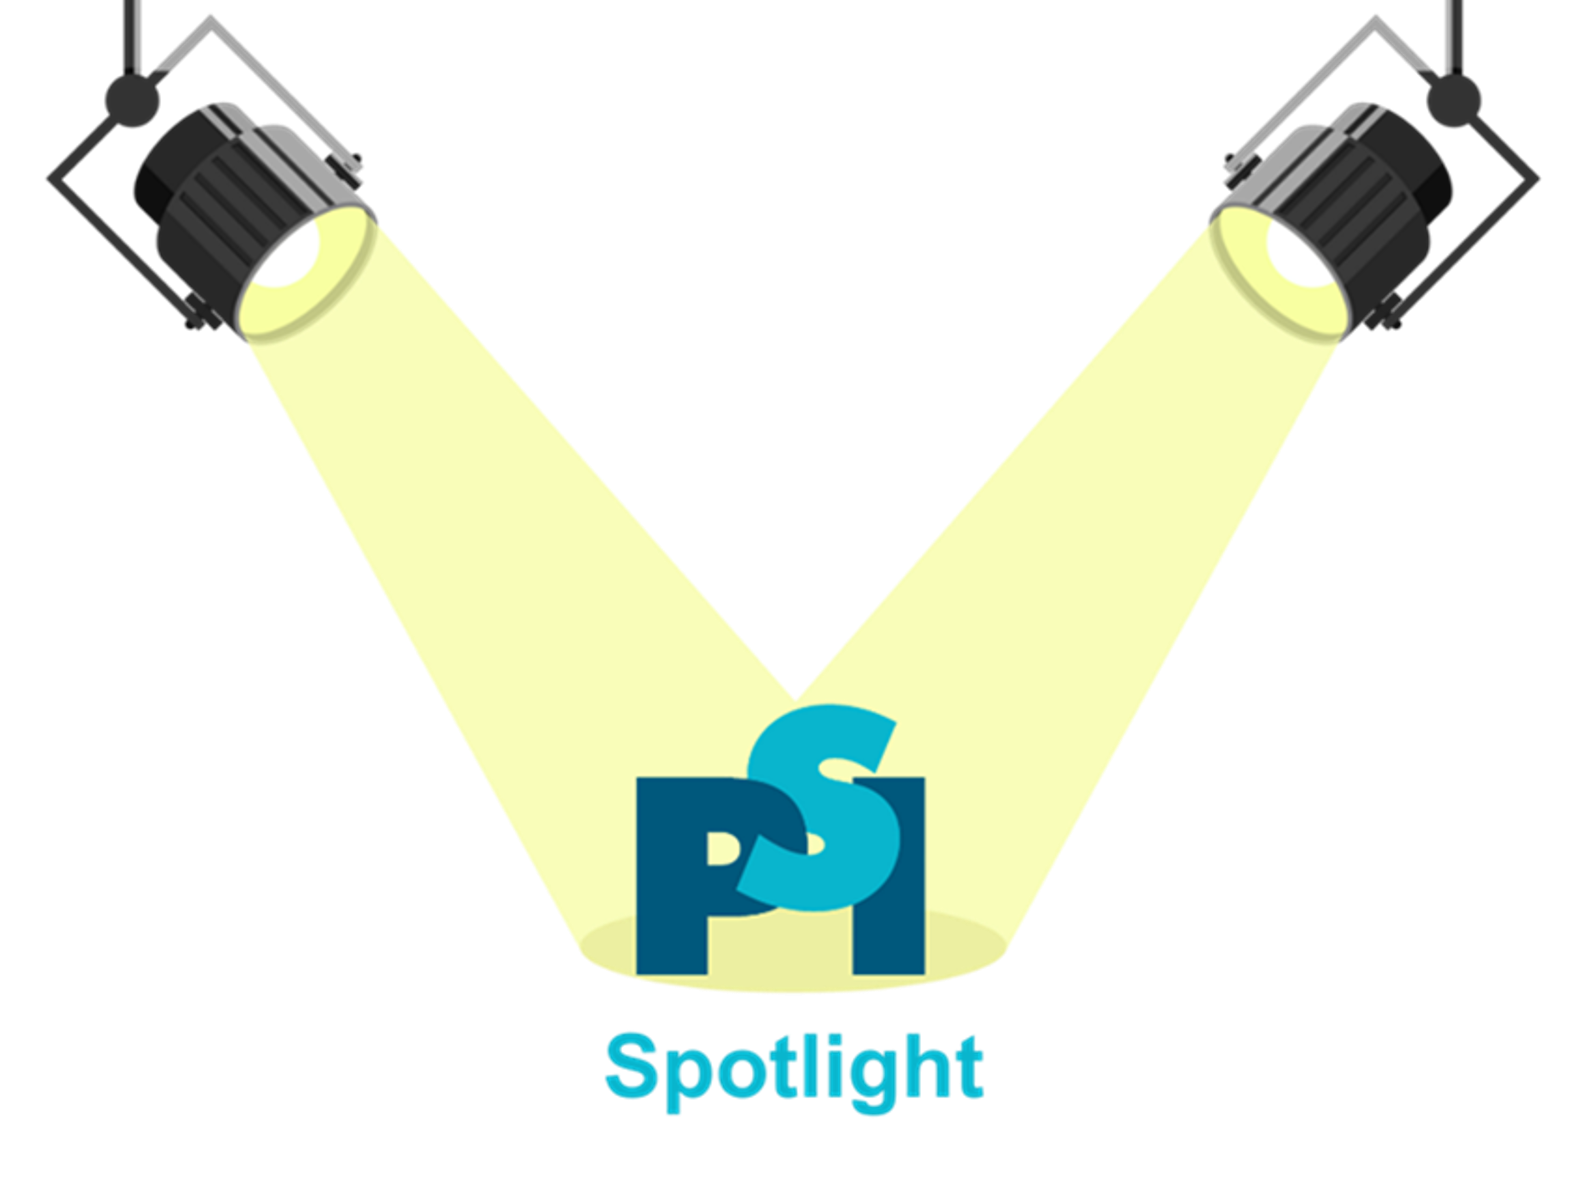 PSI Spotlight1